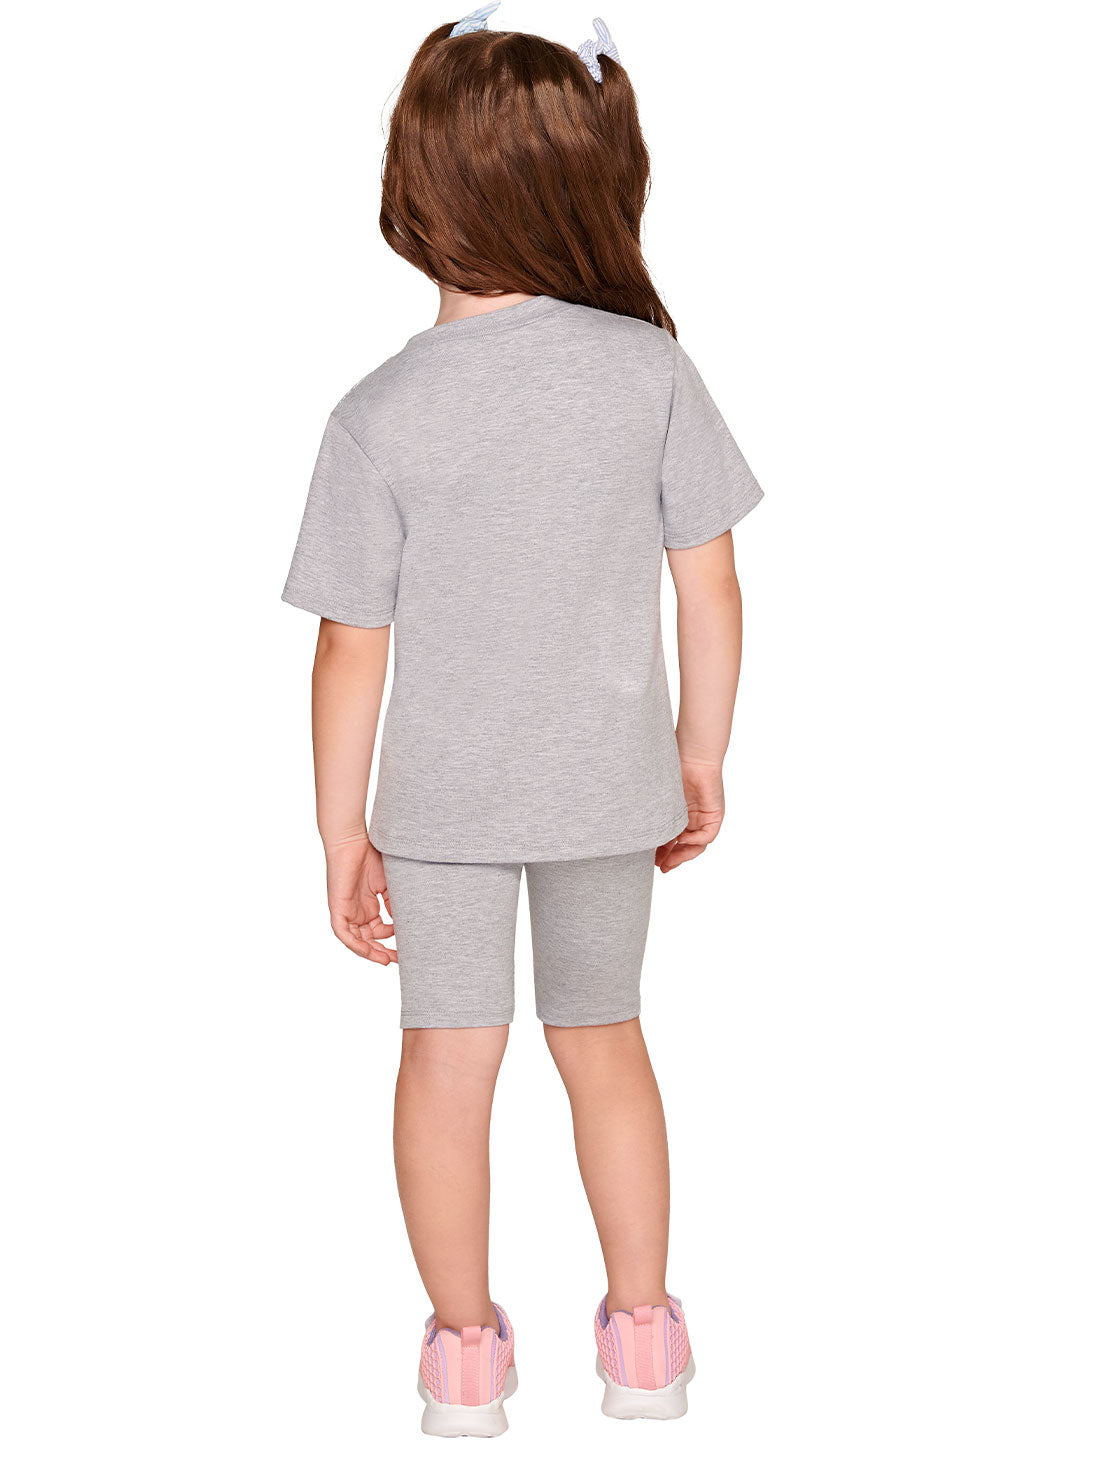 Gray T-Shirt and Shorts Set 19005